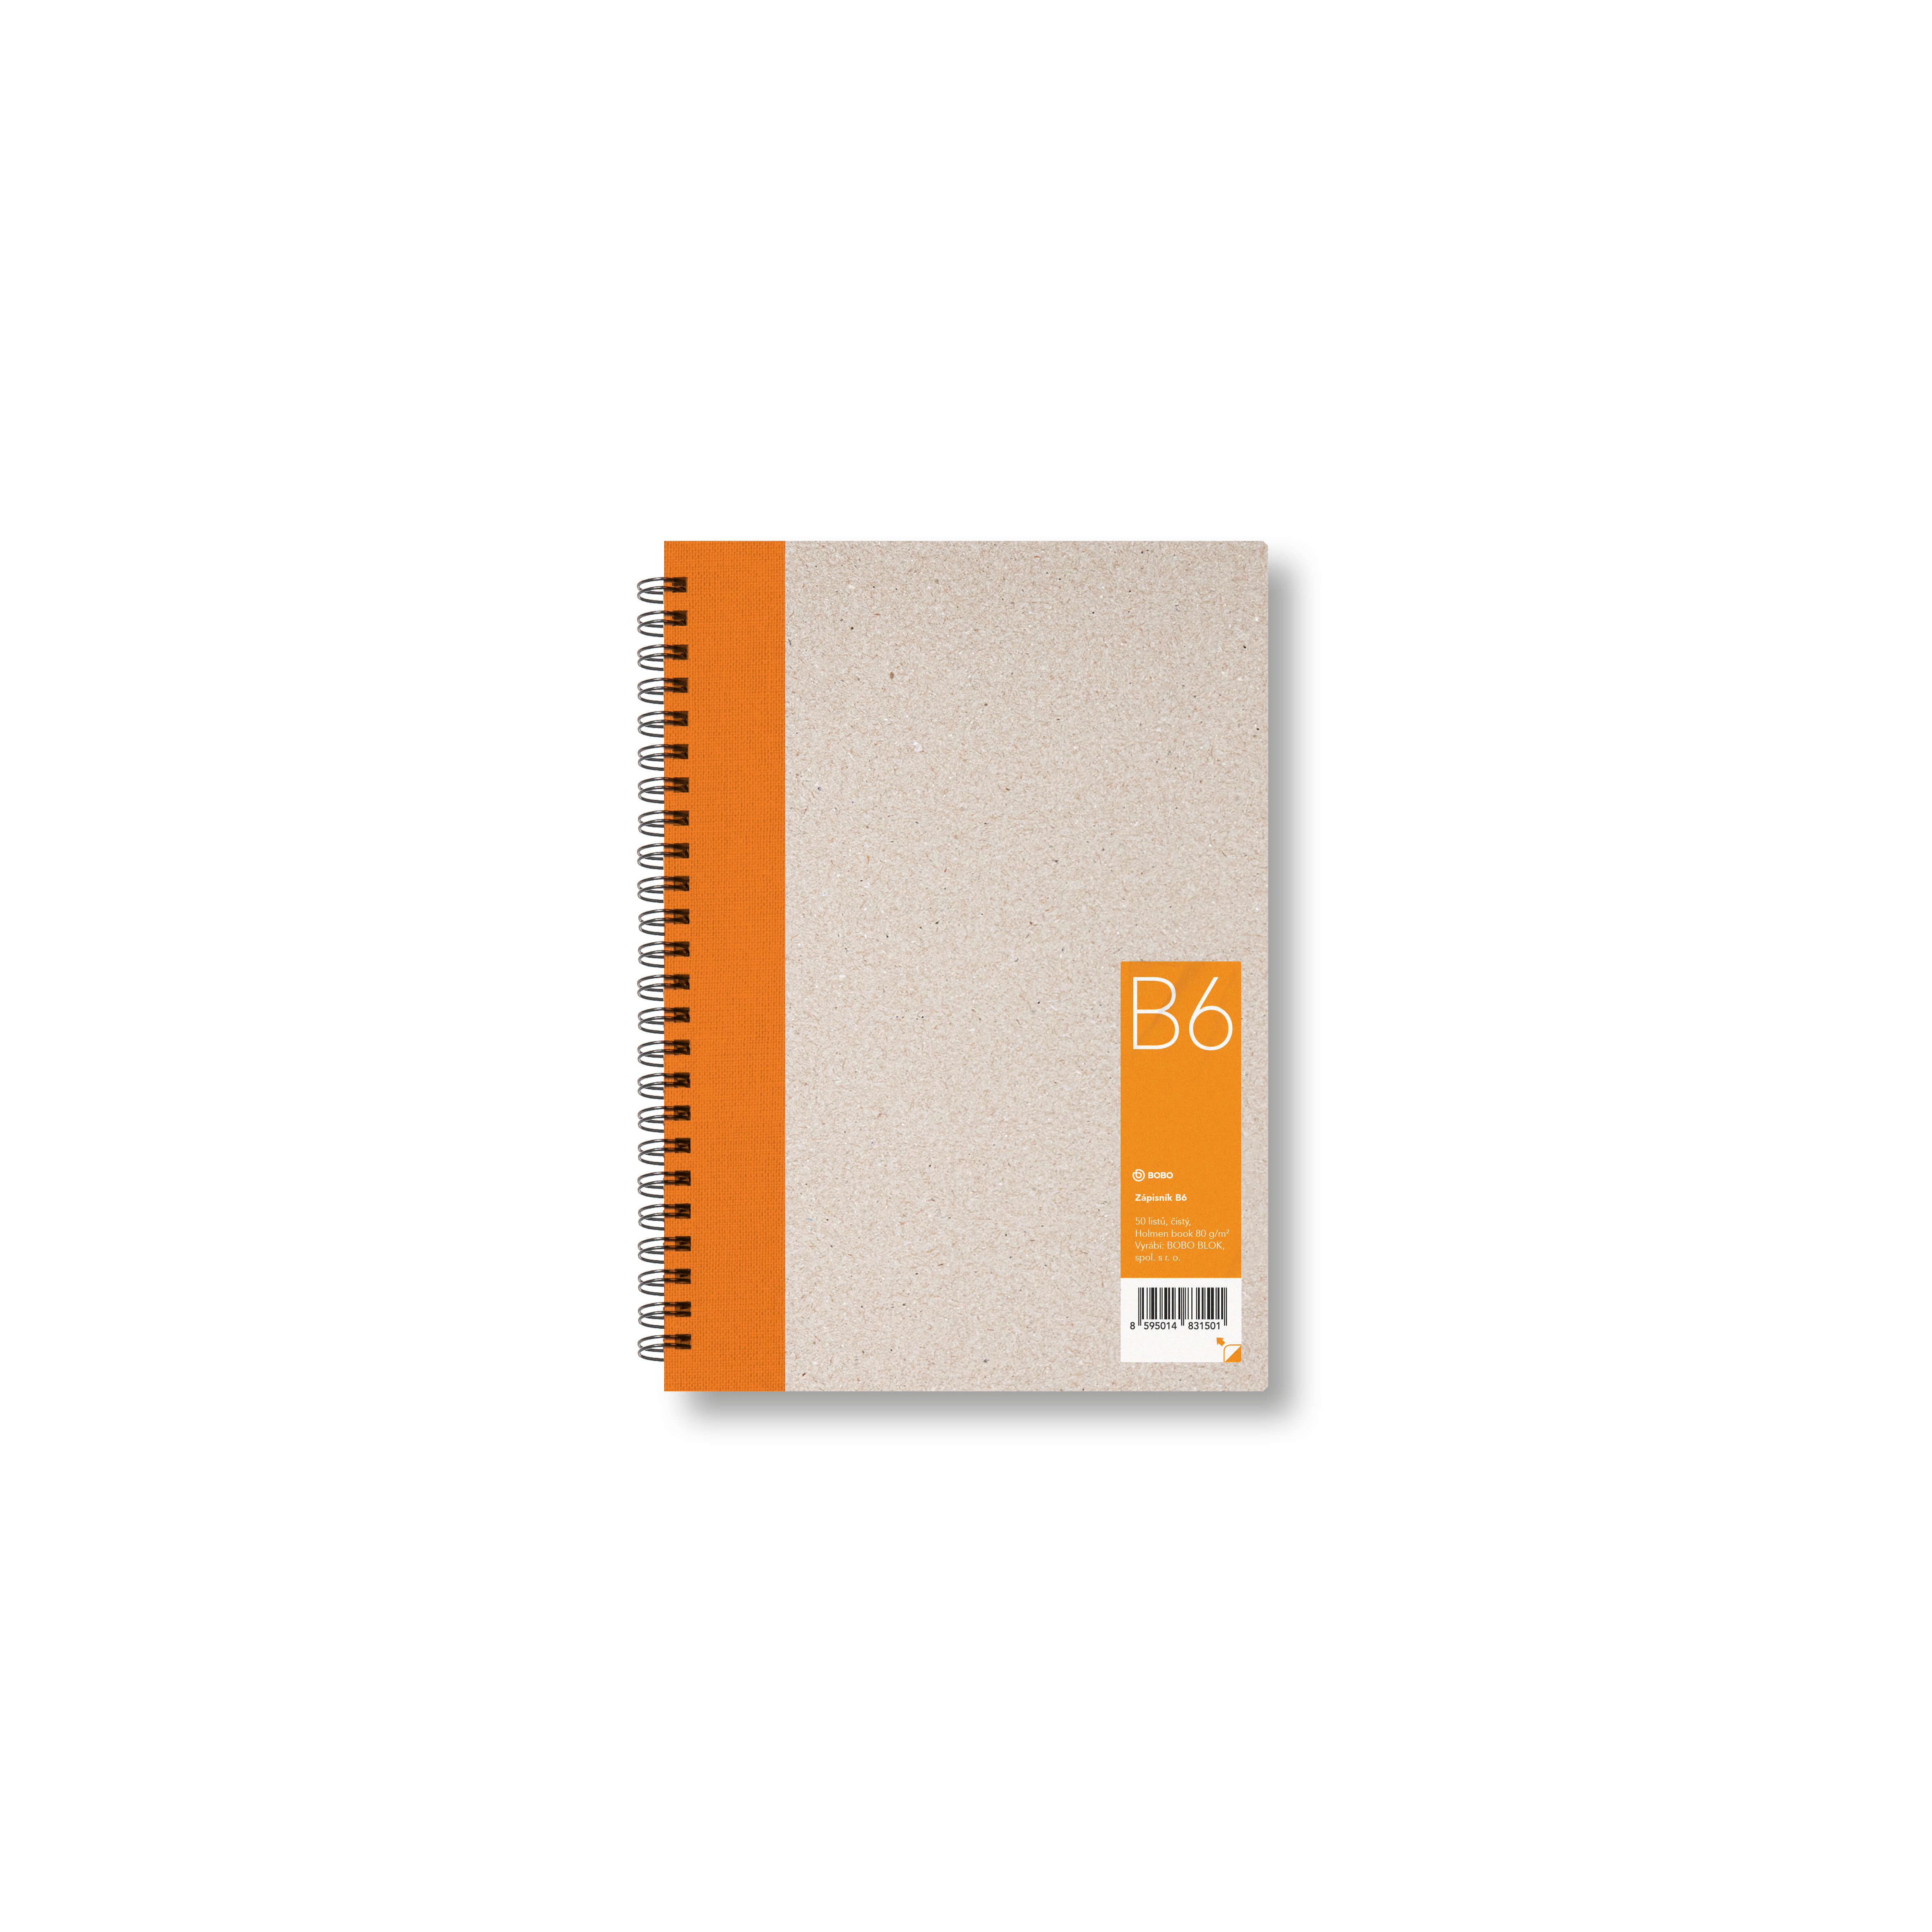 Zápisník Bobo B6, čistý, oranžový